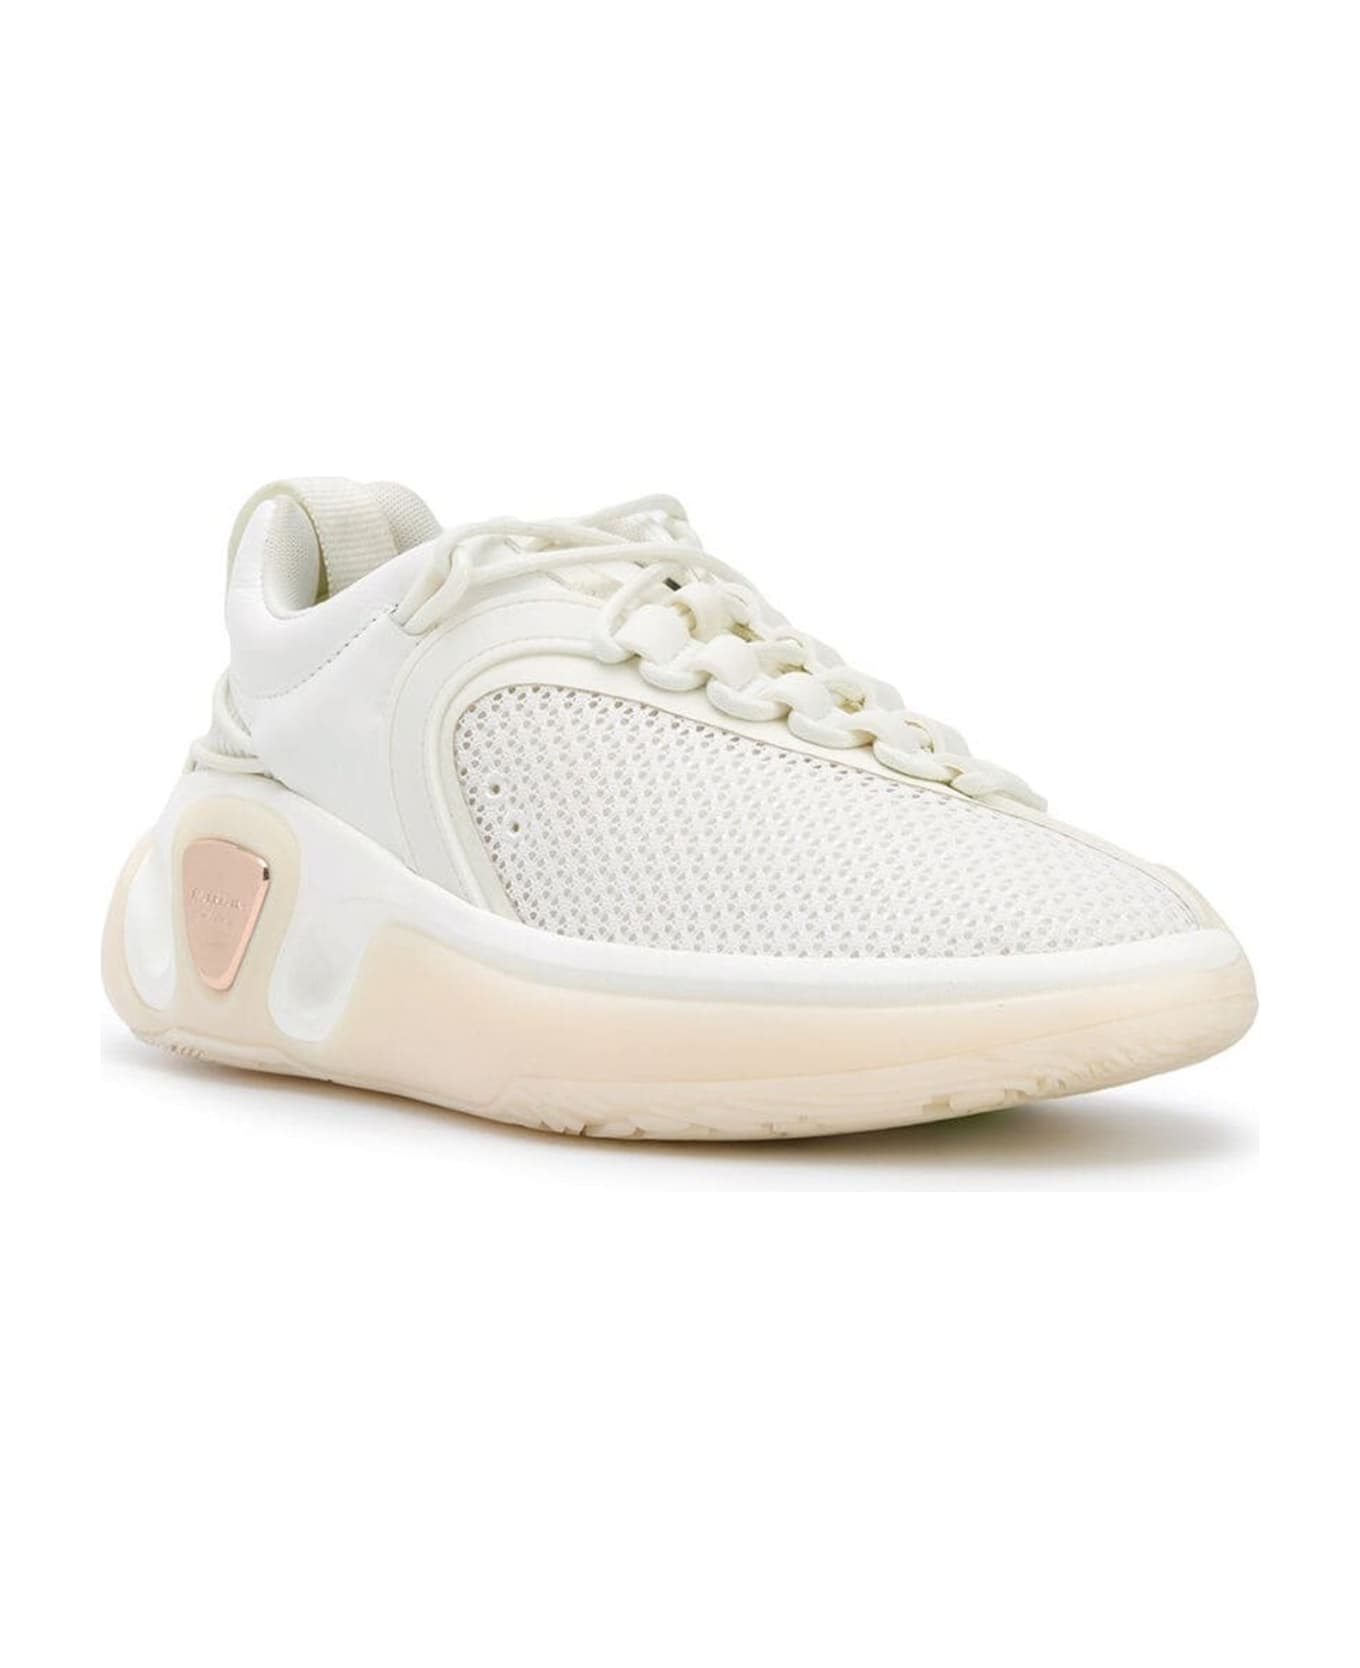 Balmain B-runner Sneakers - White スニーカー